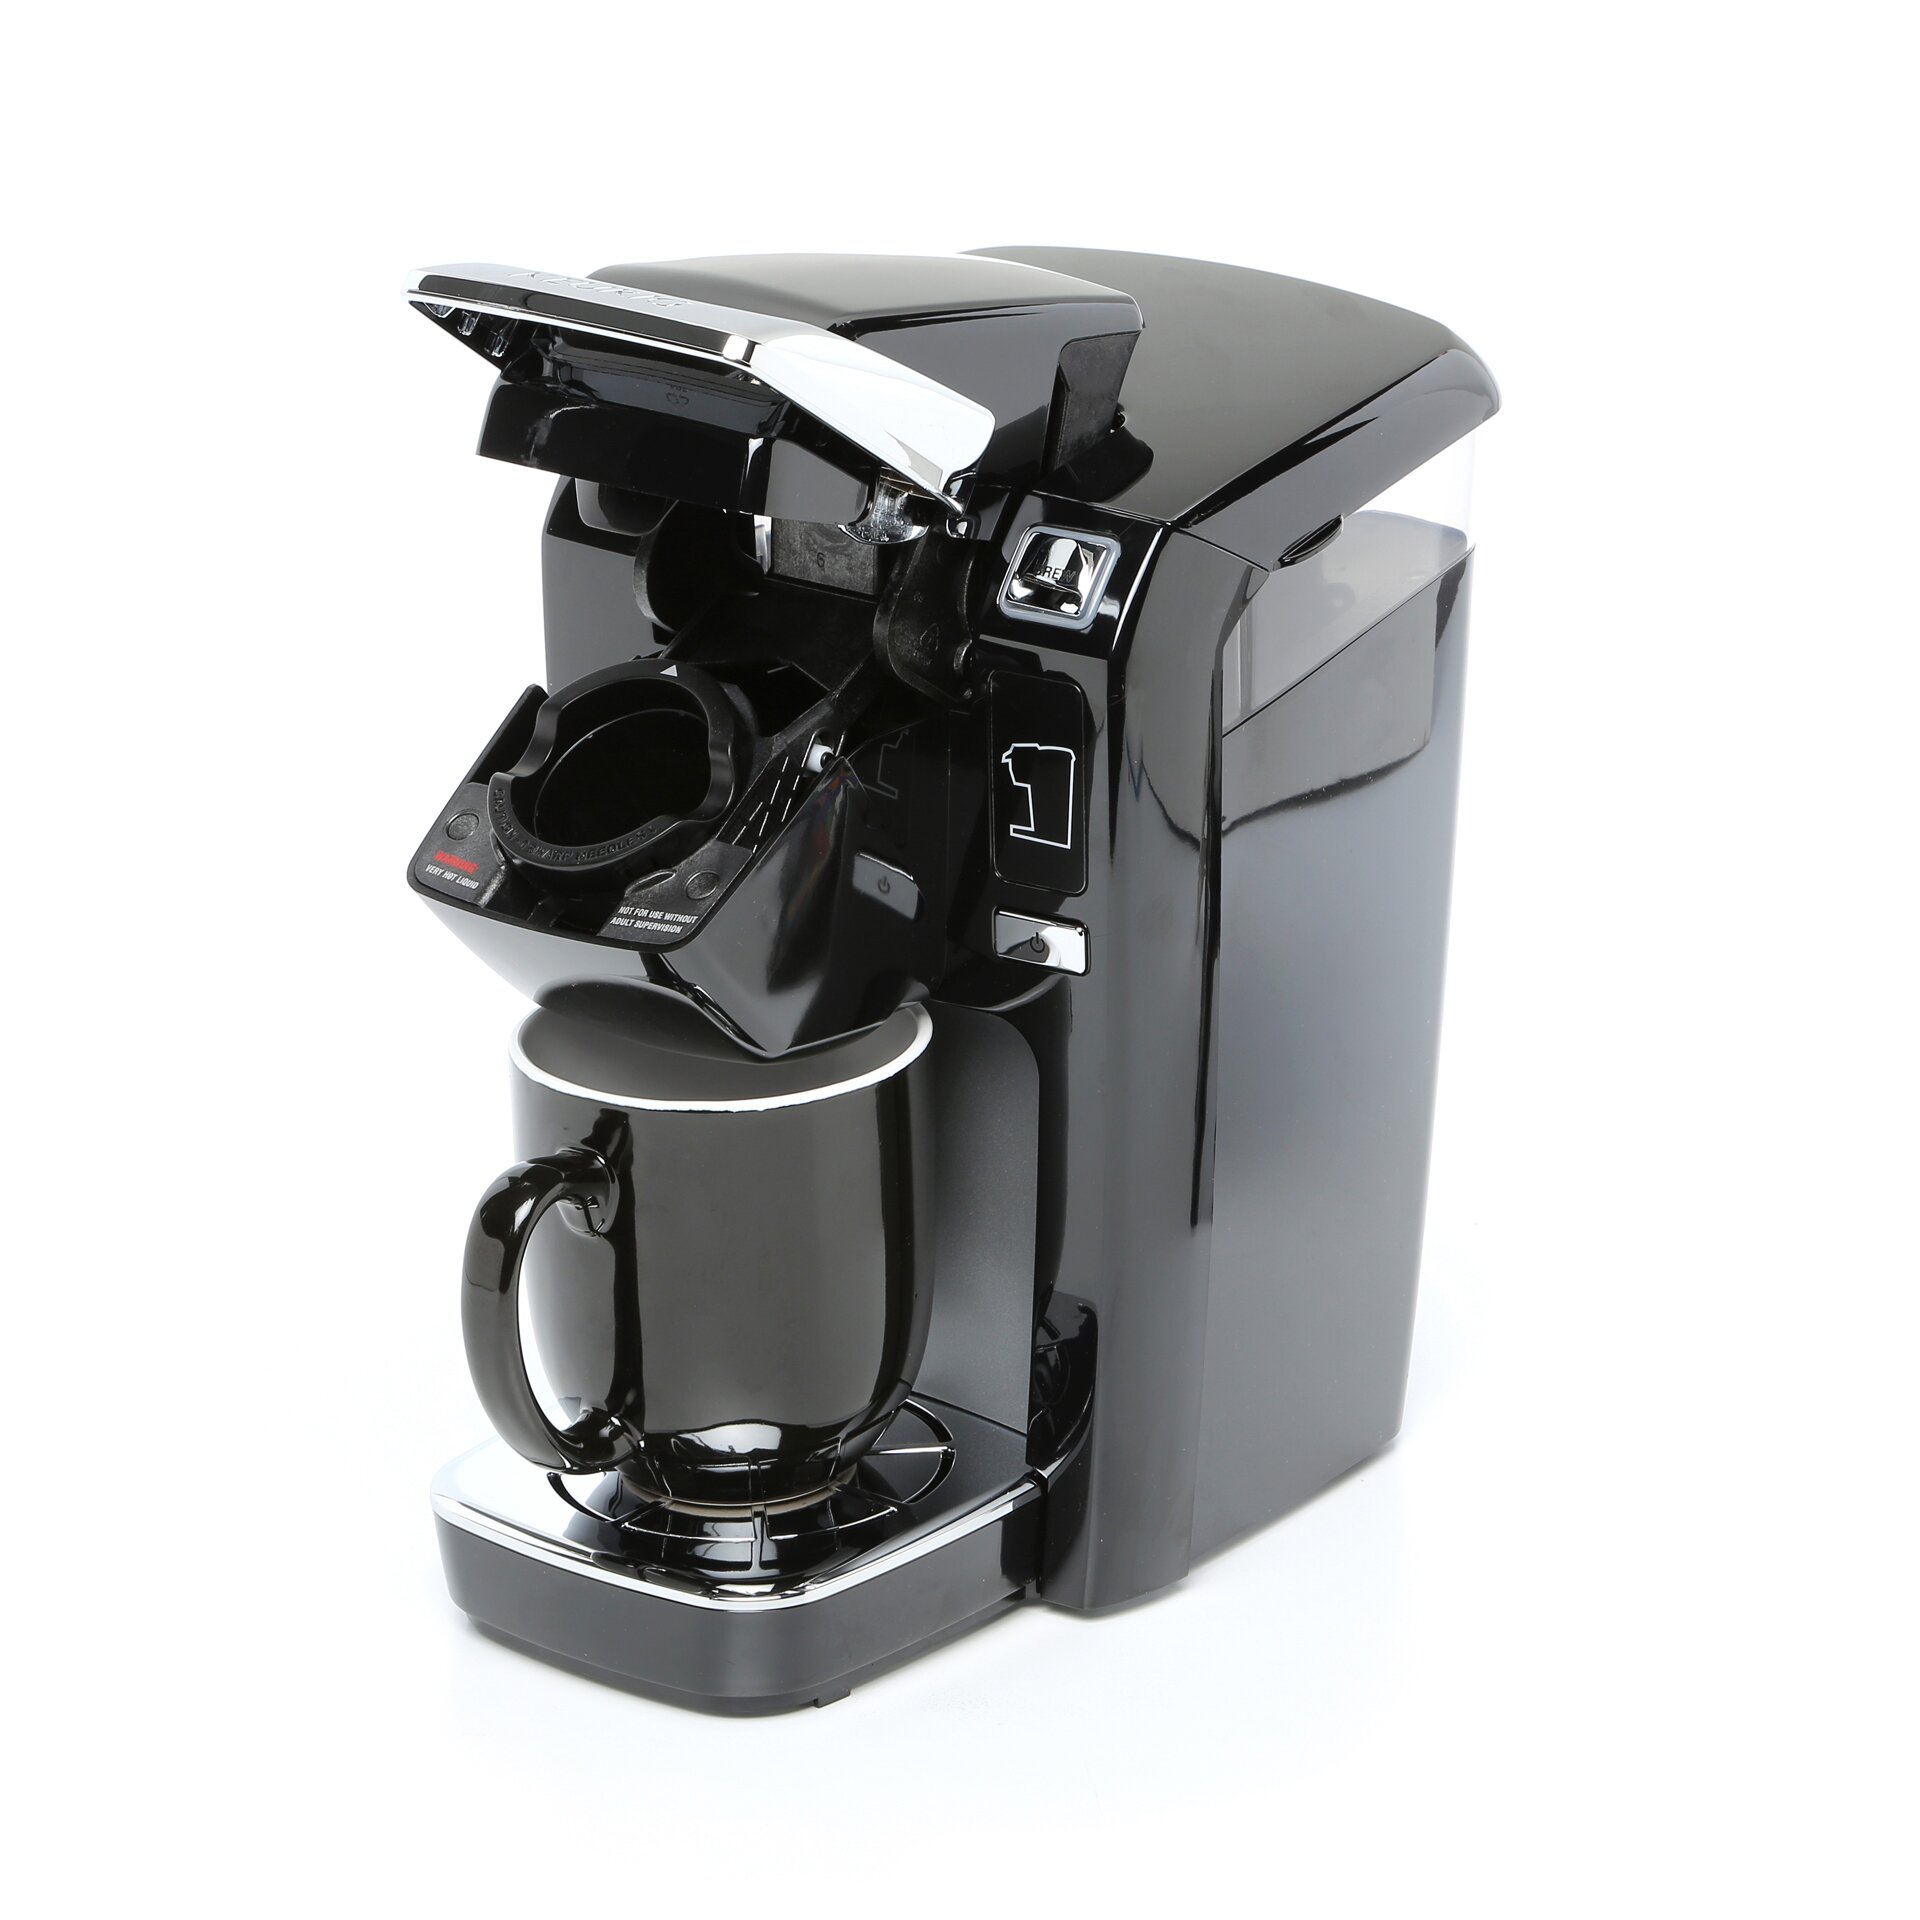 Keurig K15 Coffee Maker & Reviews | Wayfair